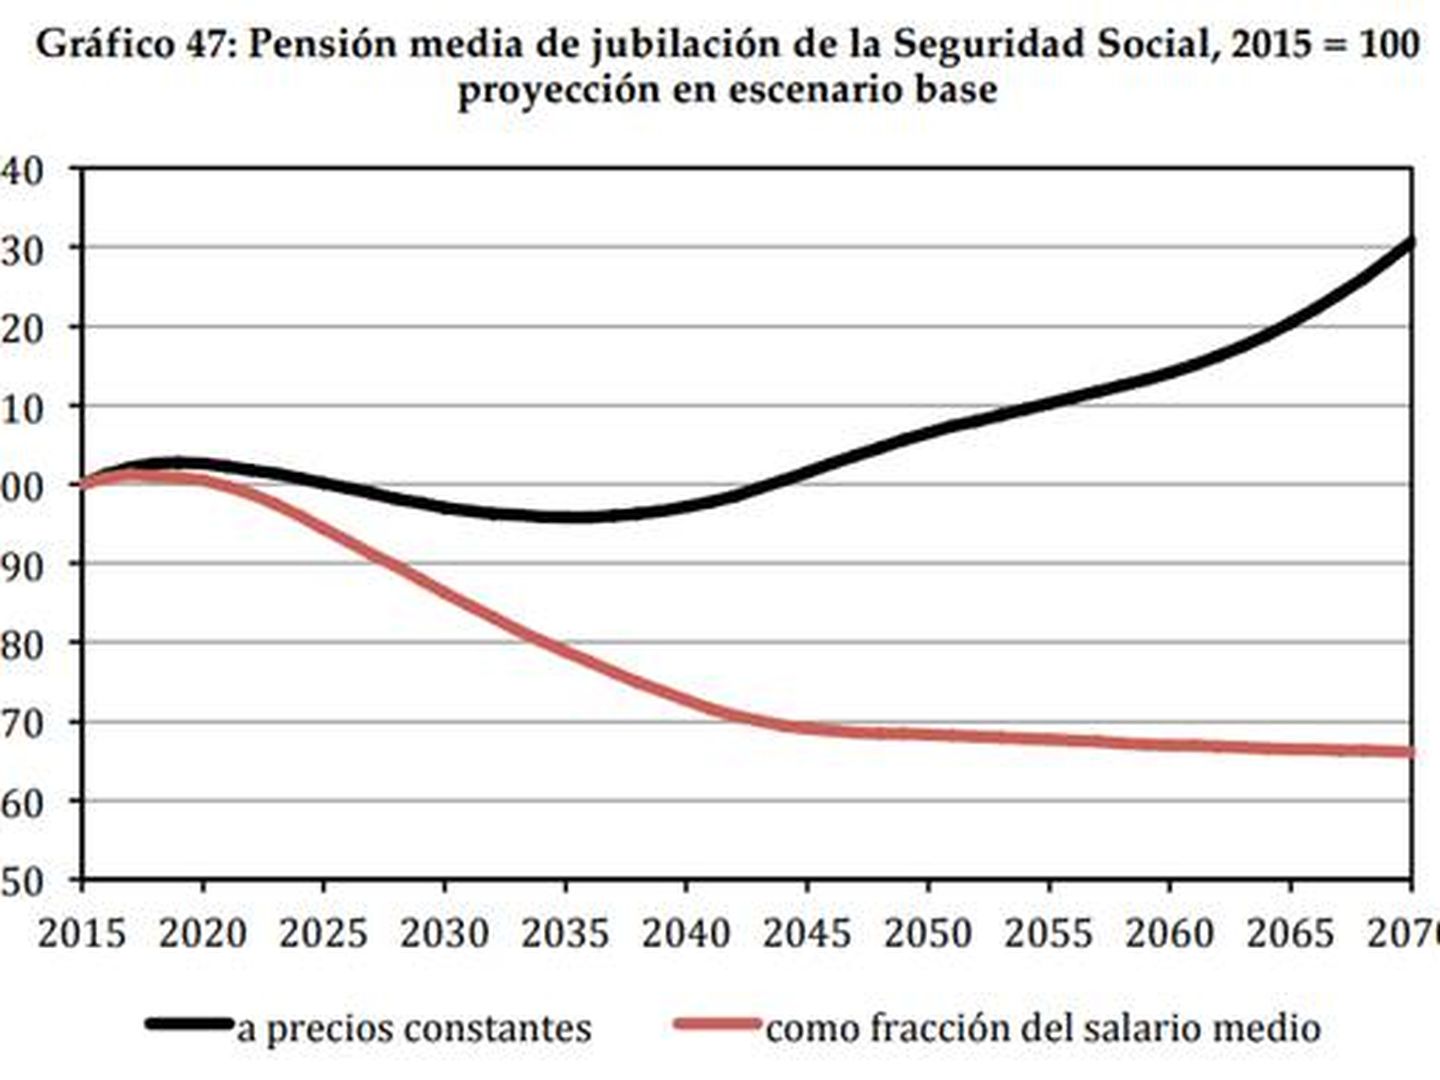 Evolución de las pensiones.